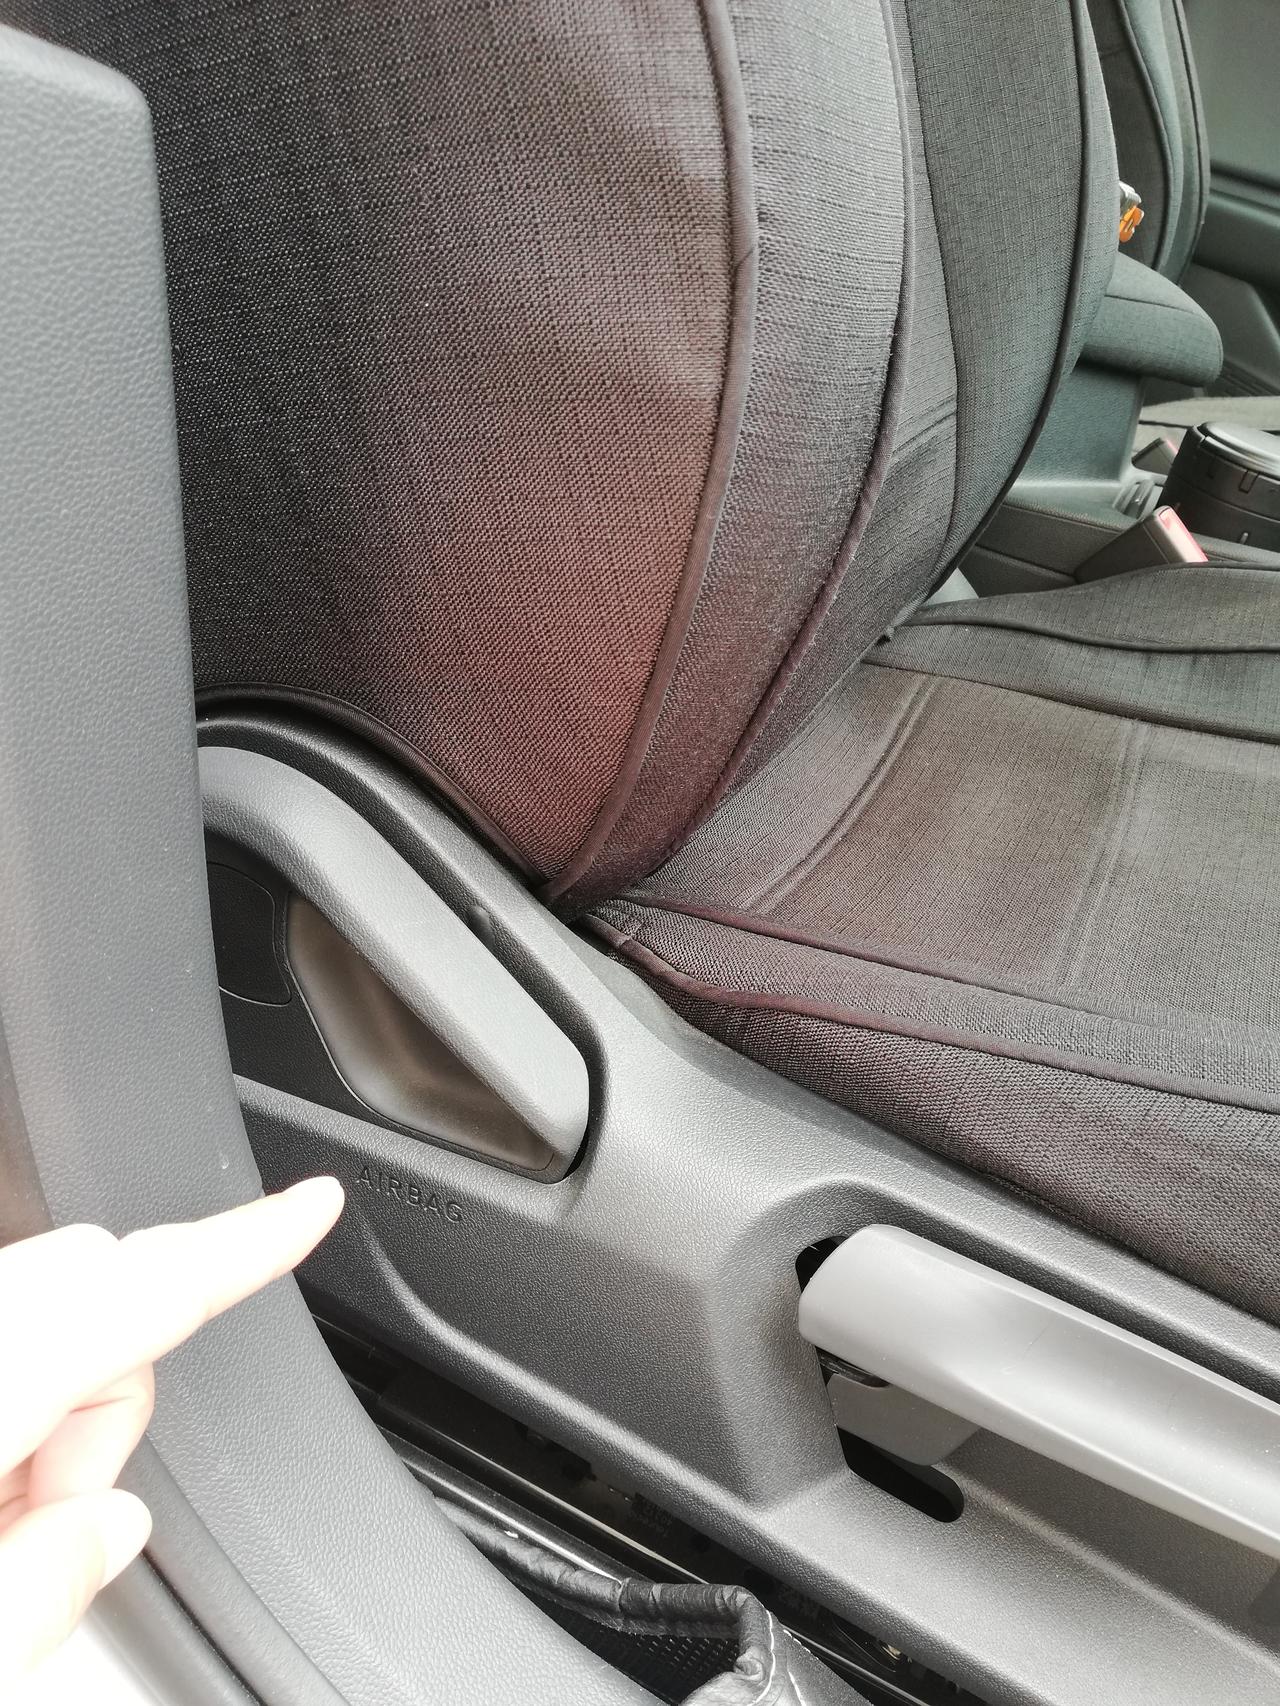 大众速腾 前侧气囊，座椅全包会影响打开么？这个“airbag”标识不在靠背上，个人感觉不影响气囊打开吧？有人知道么